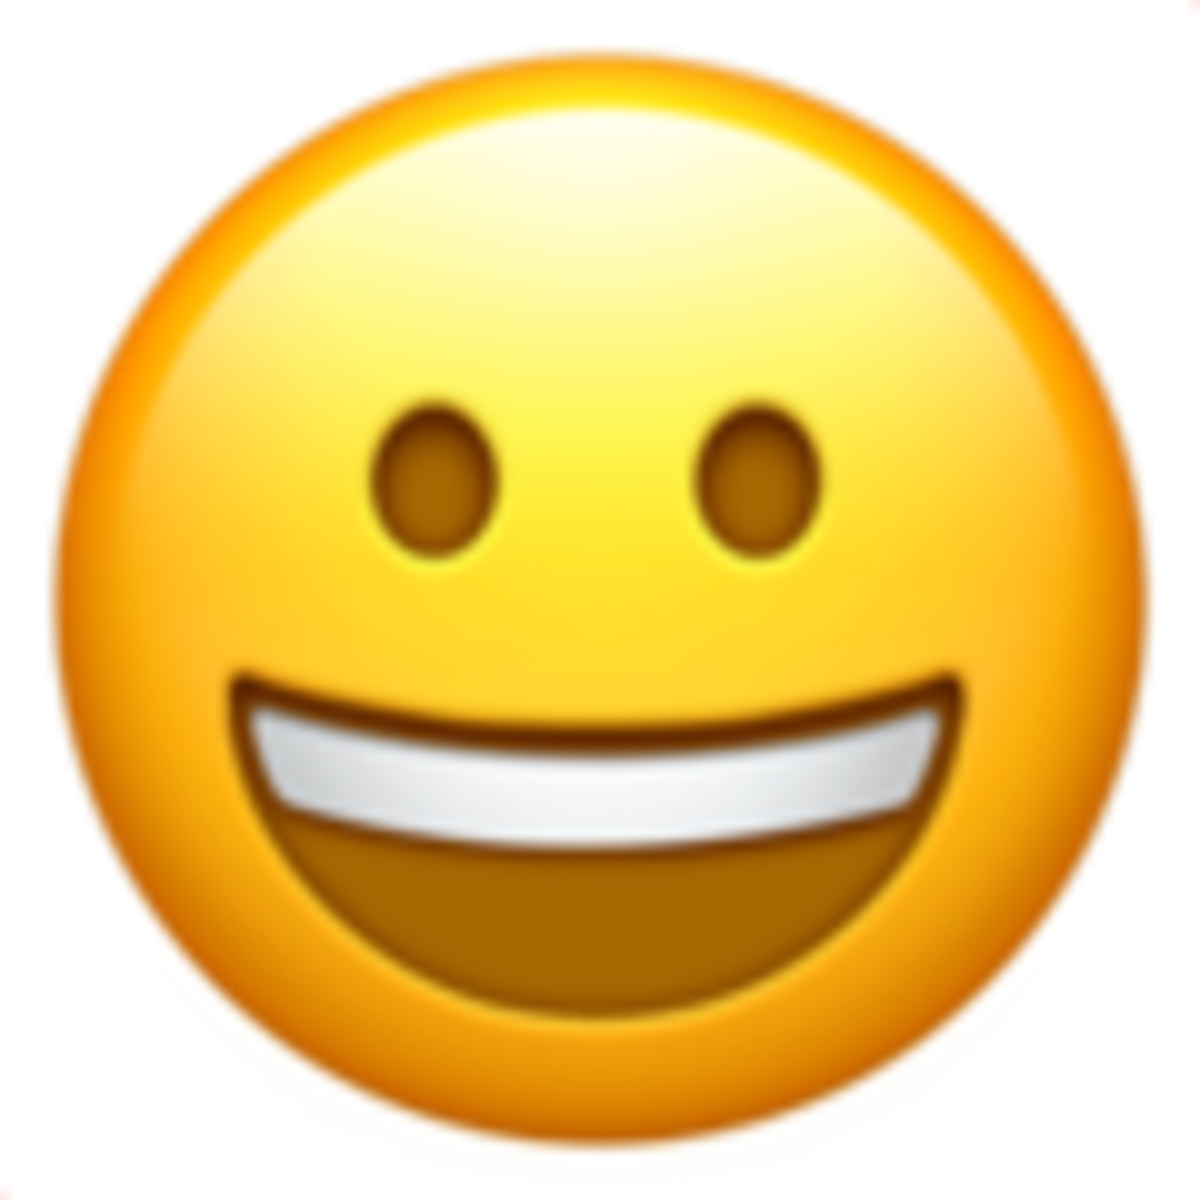 Emoji U+1F600 de cara sonriendo